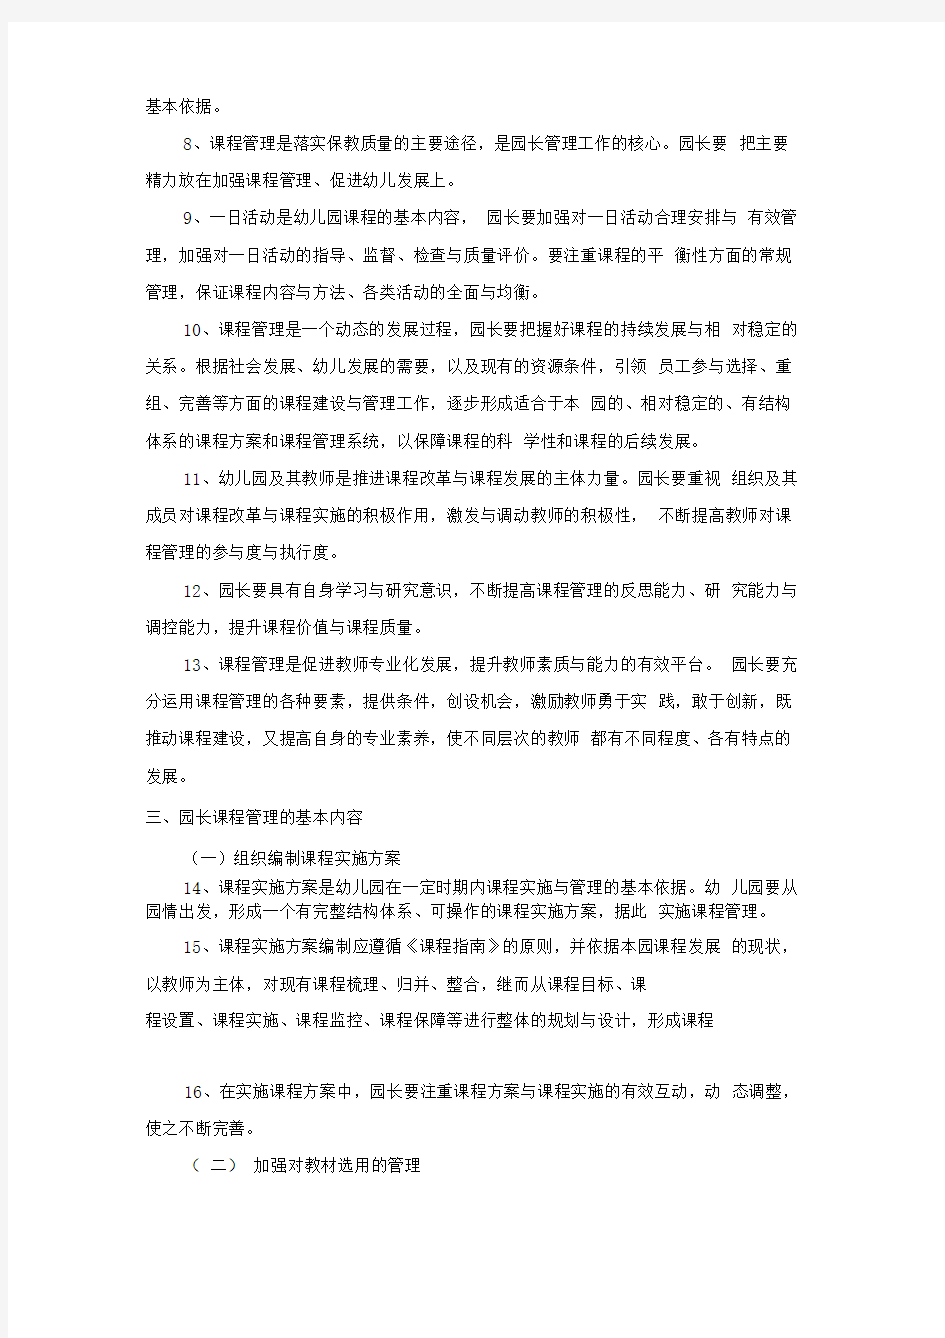 《上海市幼儿园园长课程管理指导意见(征求意见稿)》